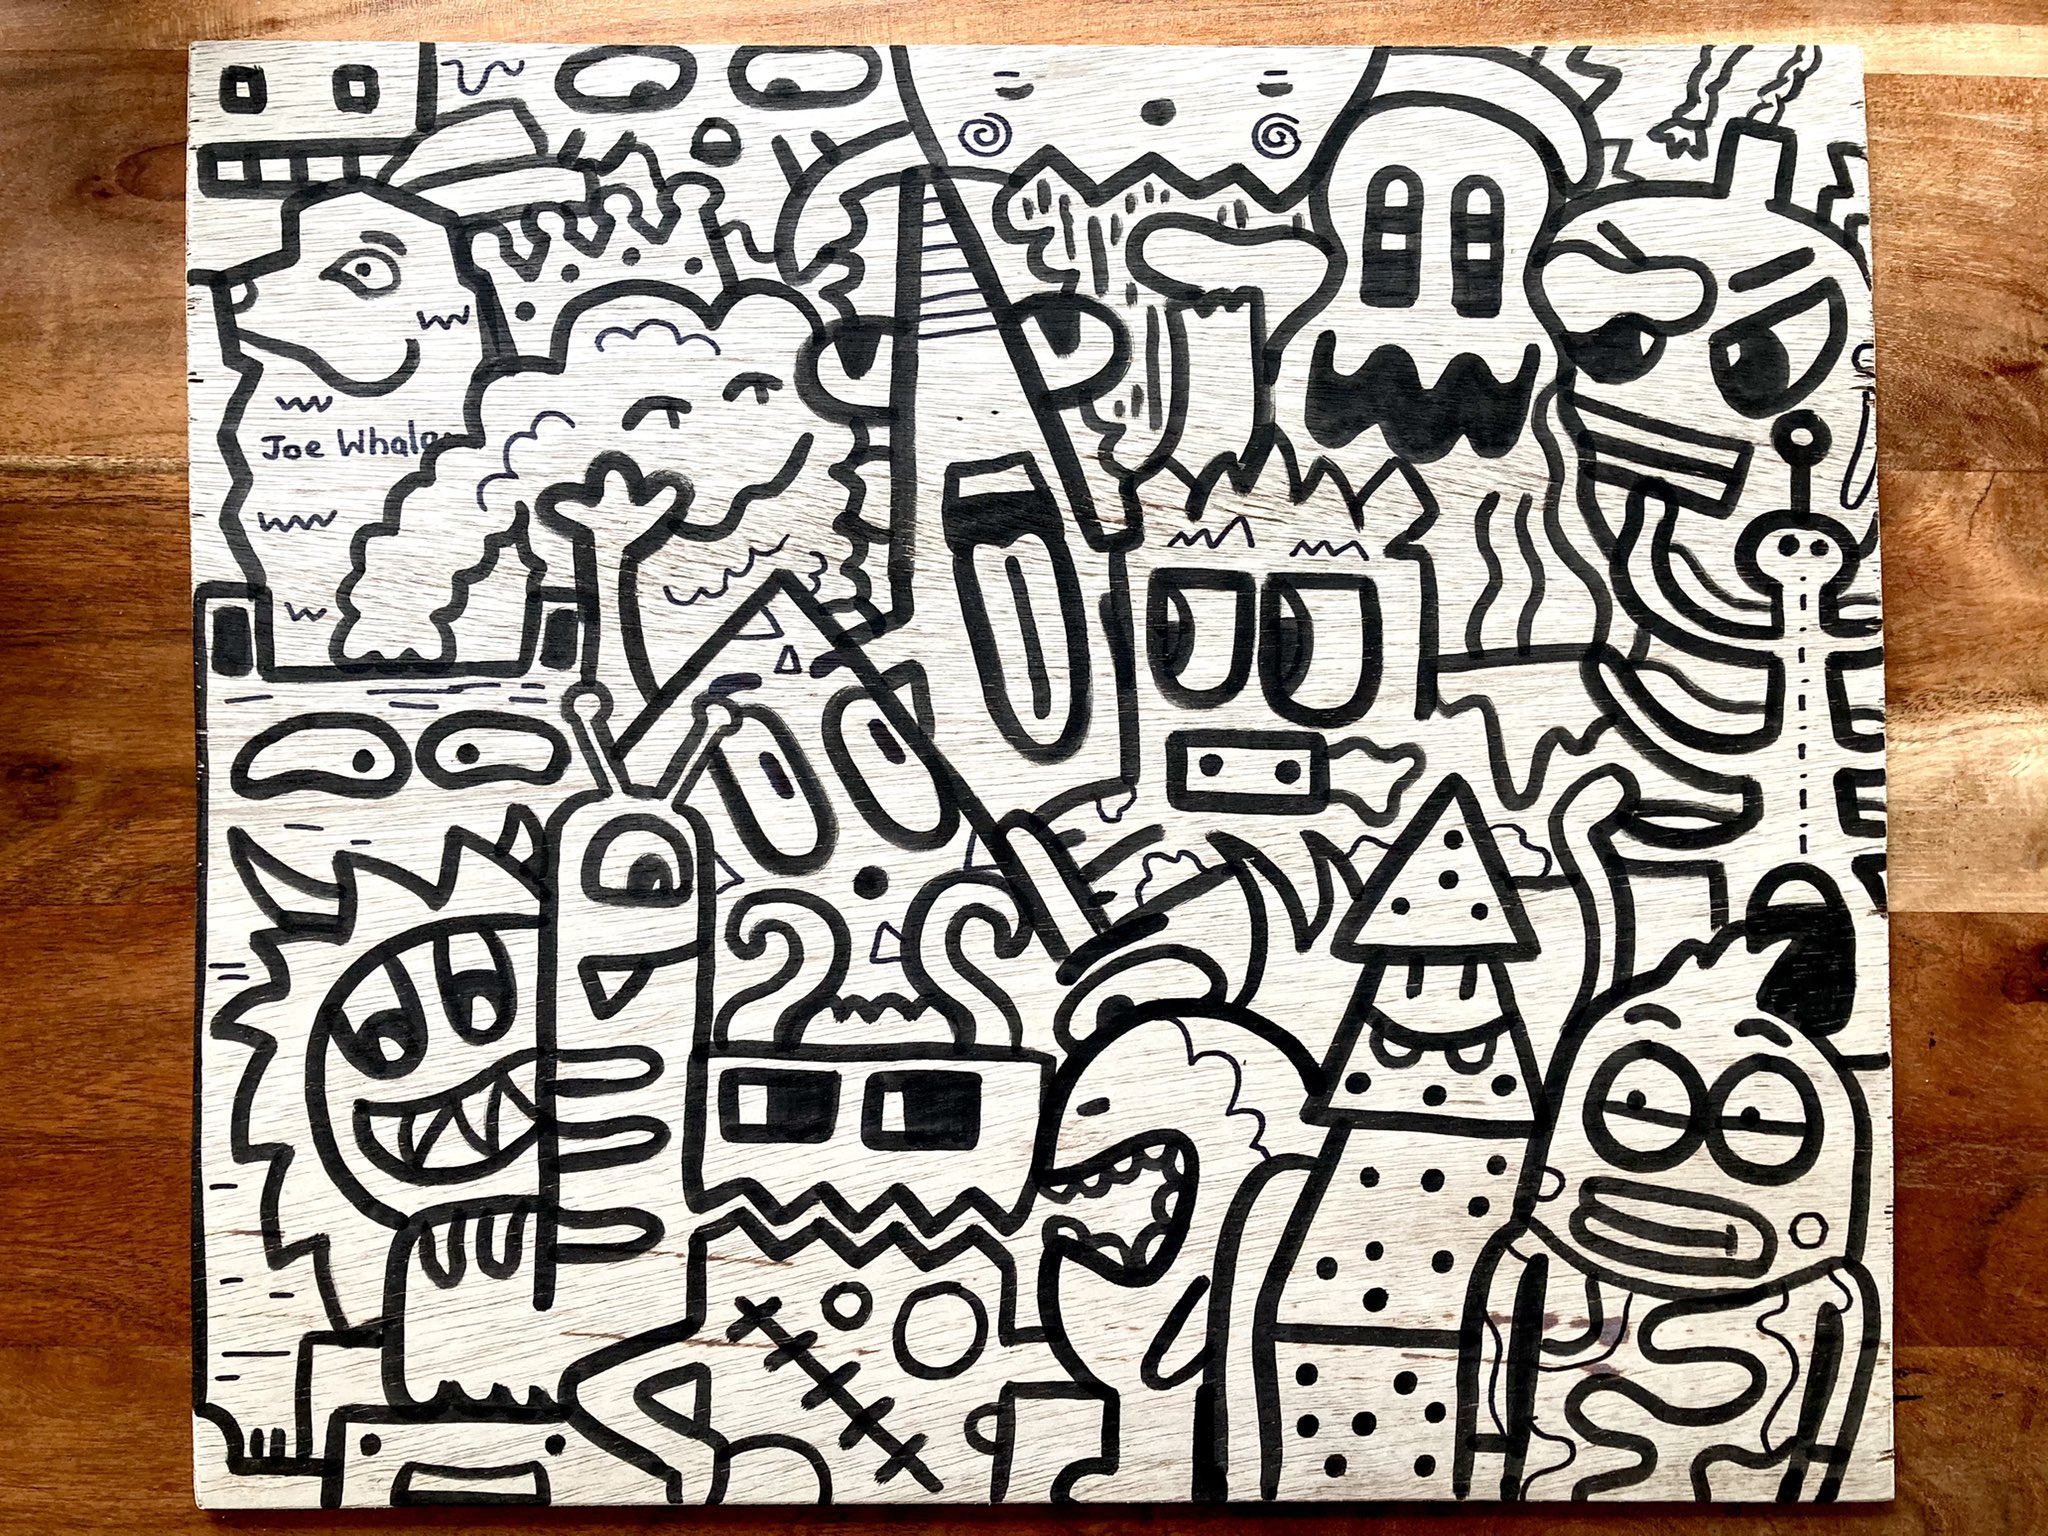 Mr Doodle Art Wallpapers